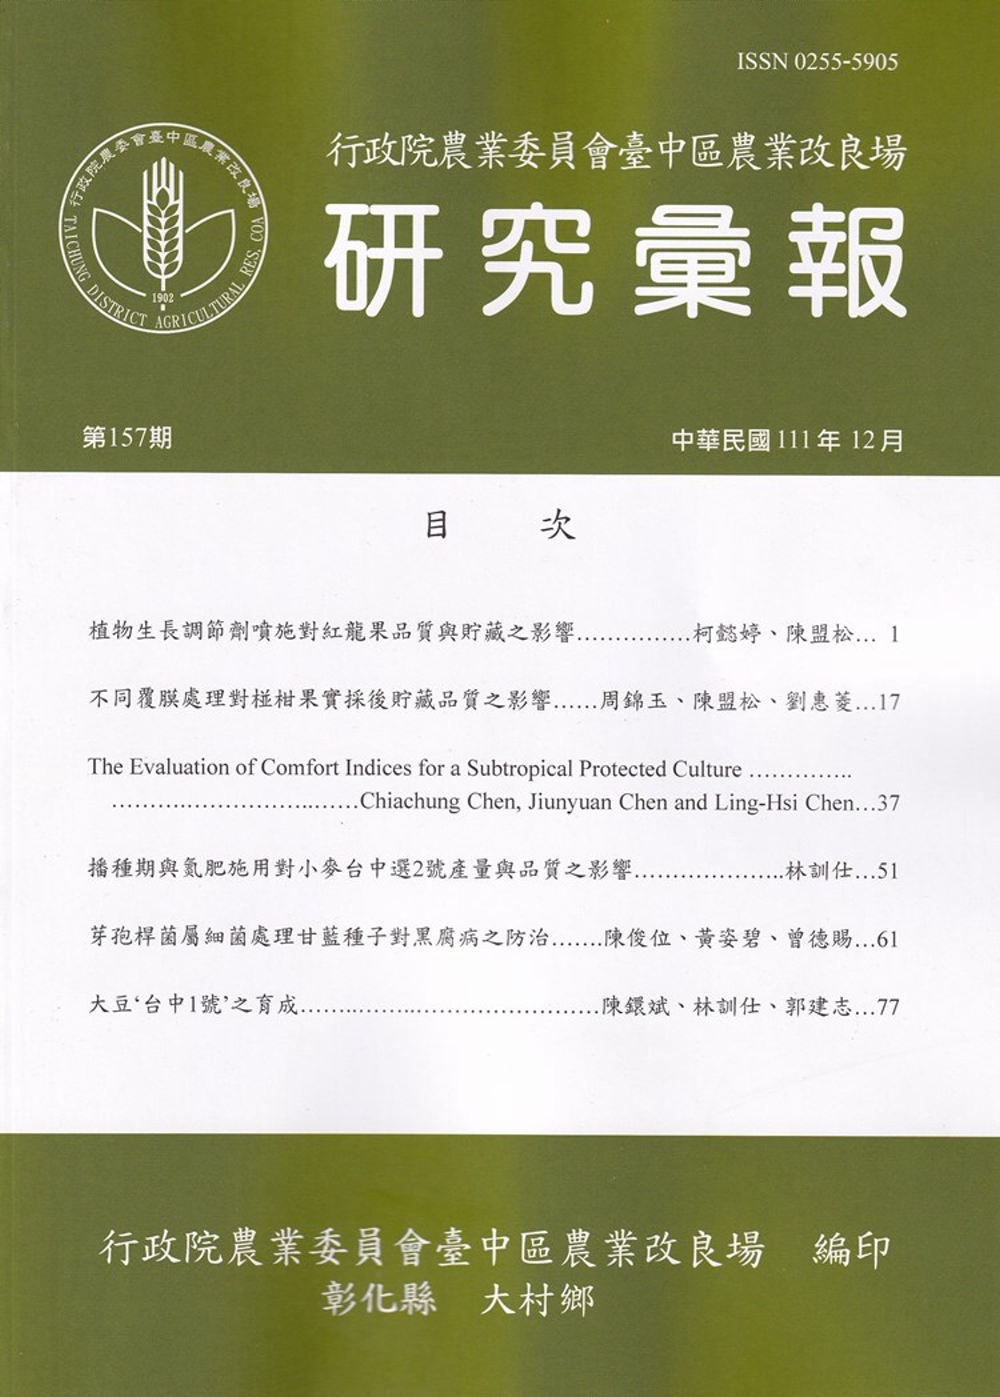 研究彙報157期(111/12)行政院農業委員會臺中區農業改良場